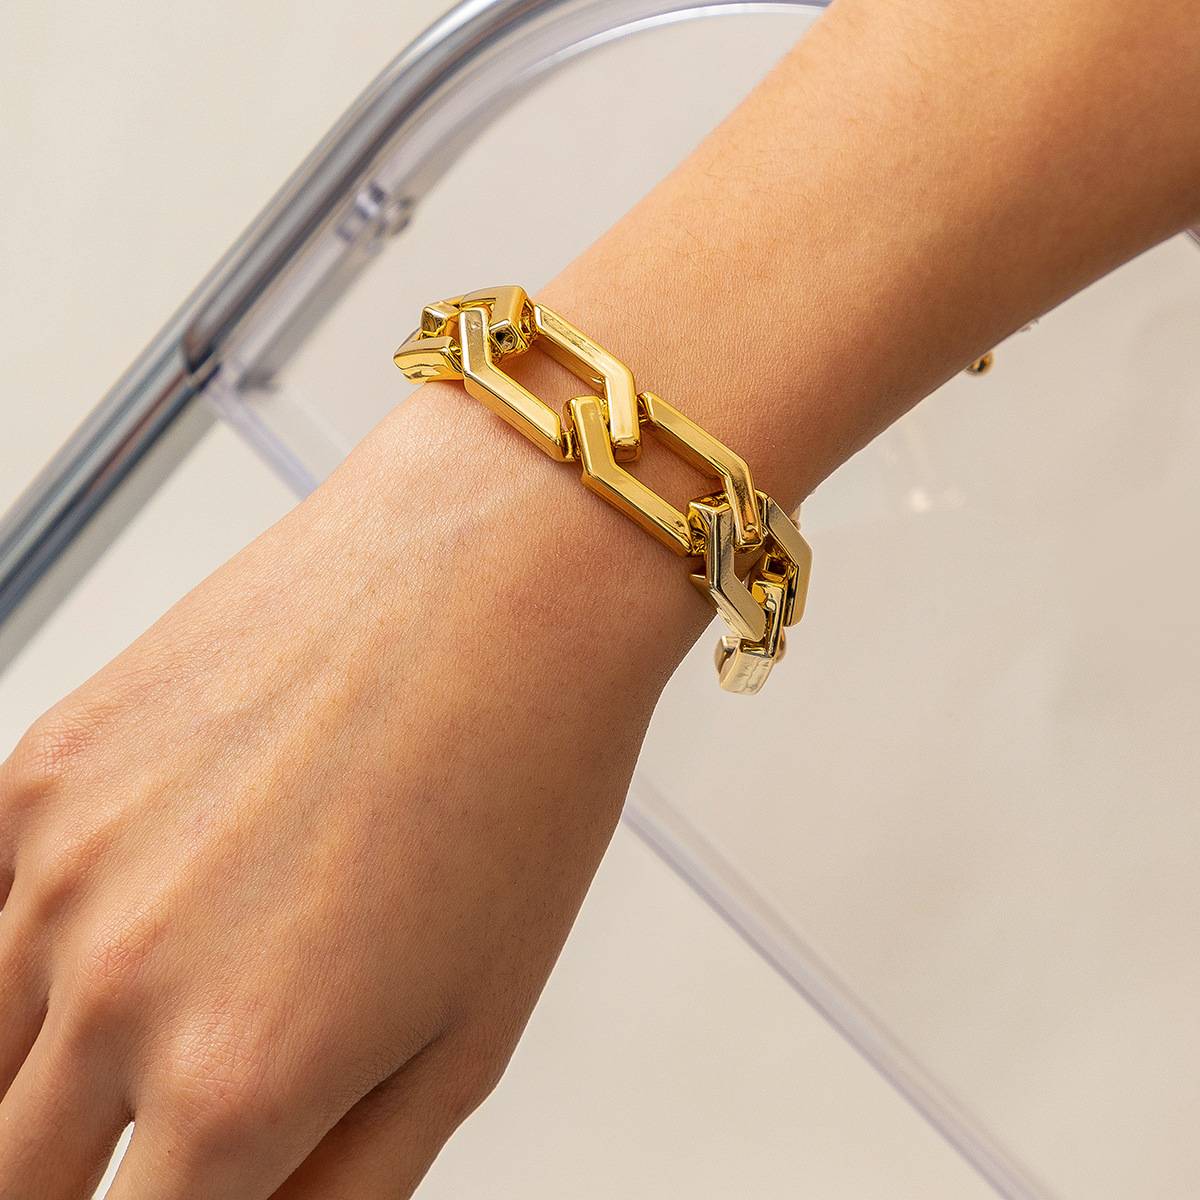 GEO Hexagon Link Chain Bracelet for Women Girls Fashion Jewelry 